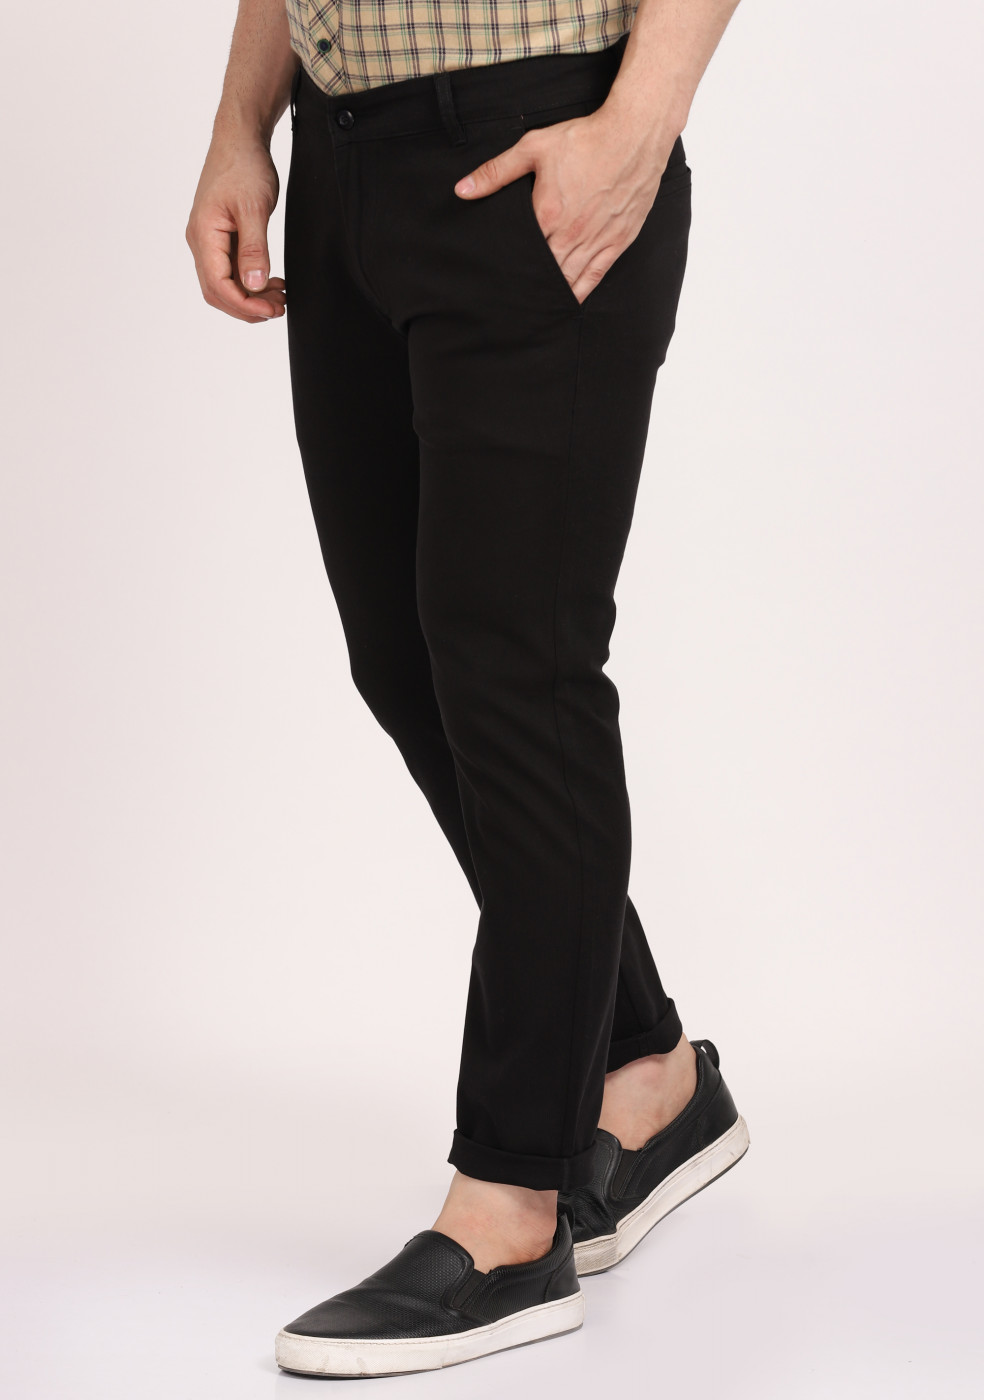 ASHTOM Black Formal Cotton Trouser Regular Fit For Men